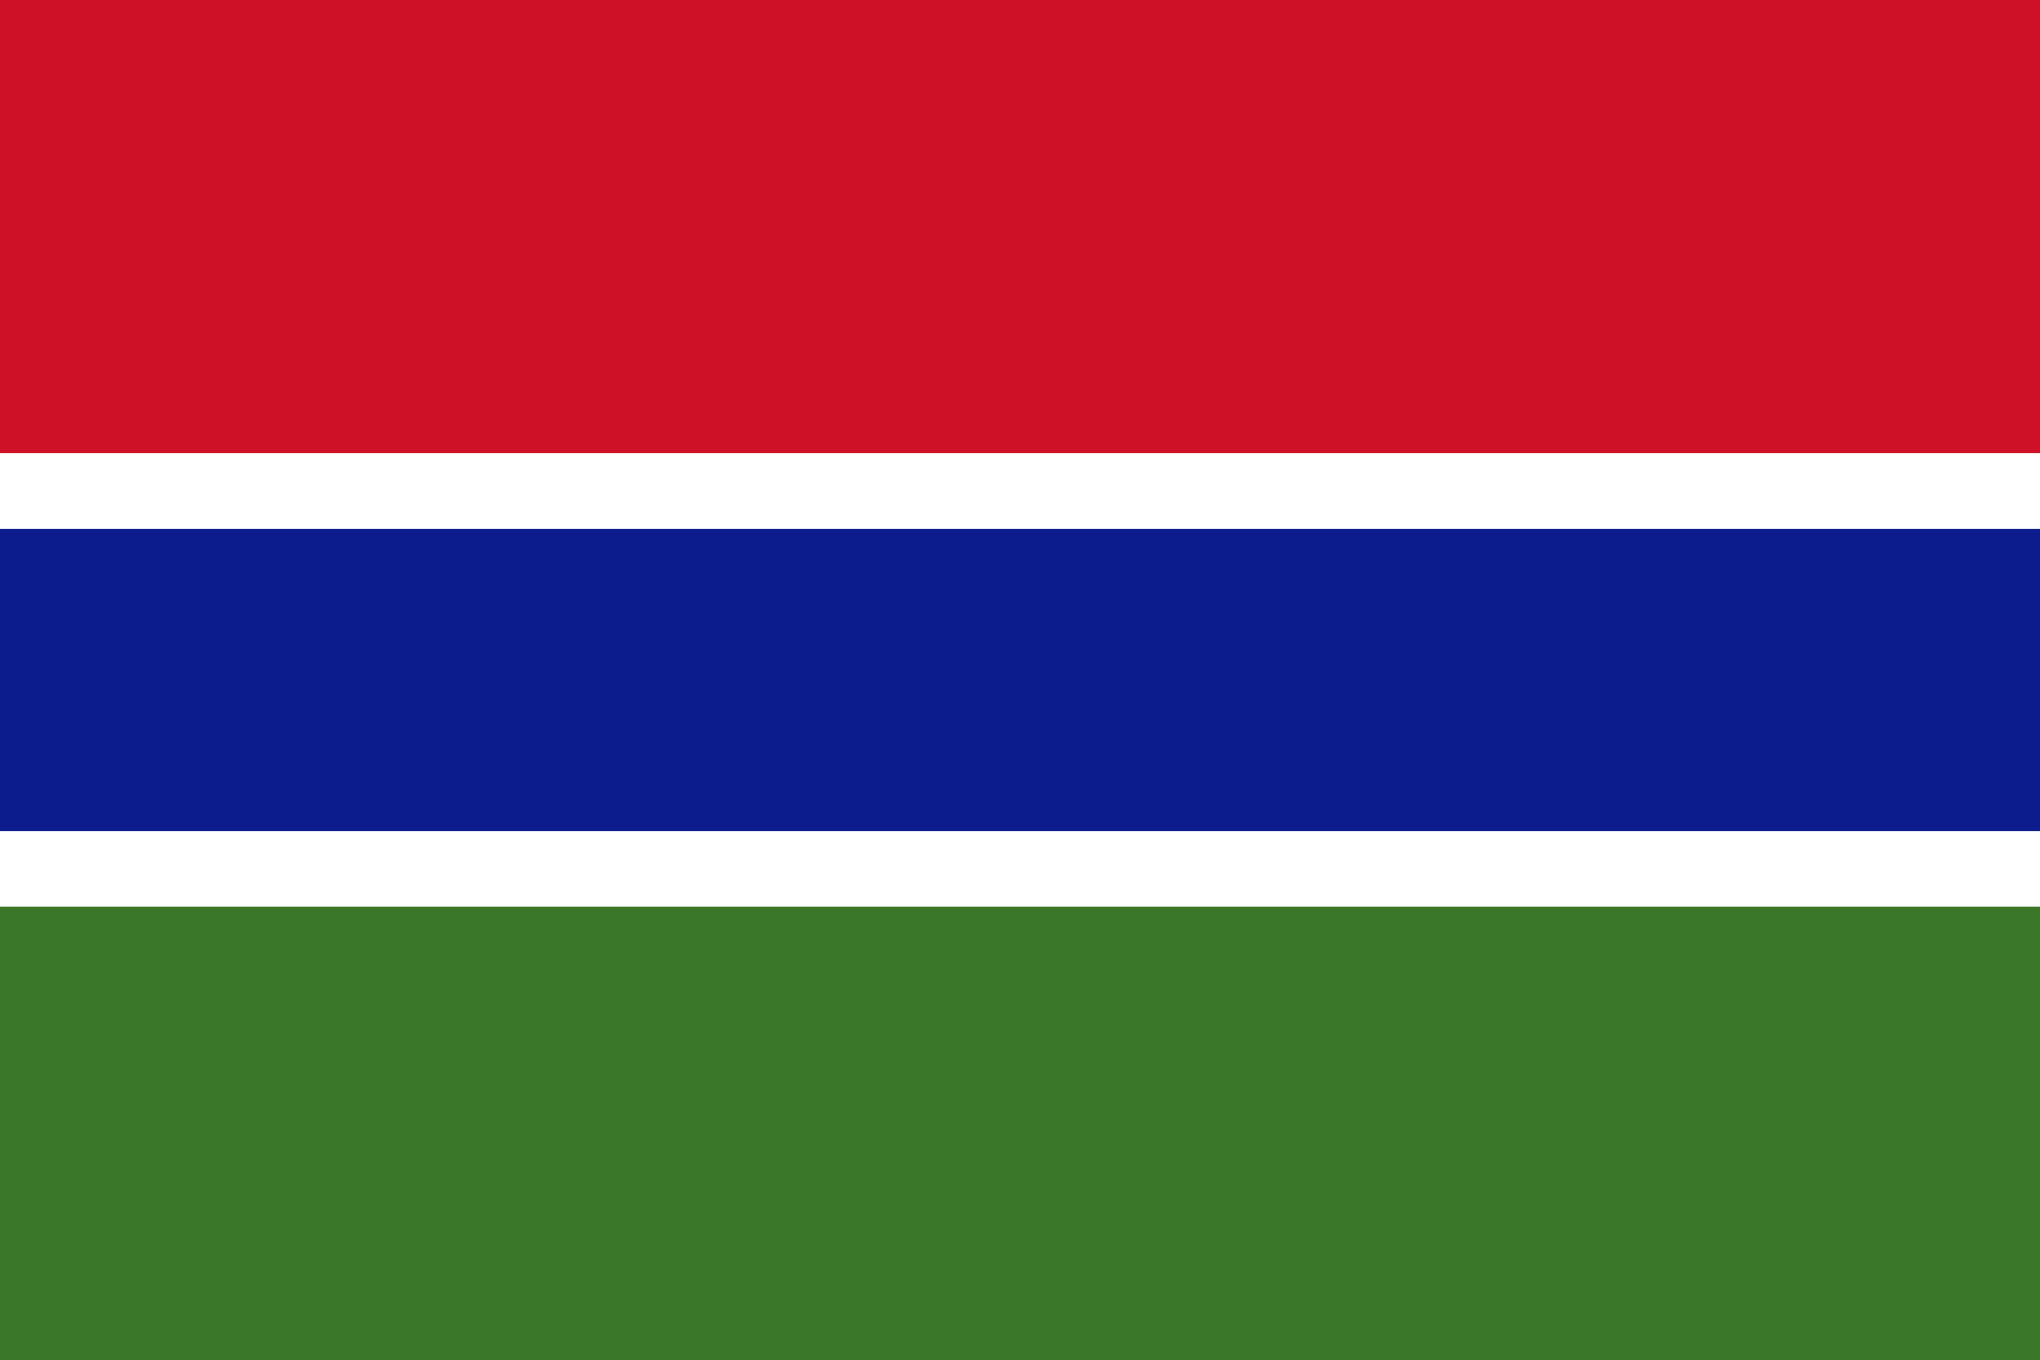 Bild der Staatsflagge Gambia - mit einer Auflösung von 2040x1360 - Afrika